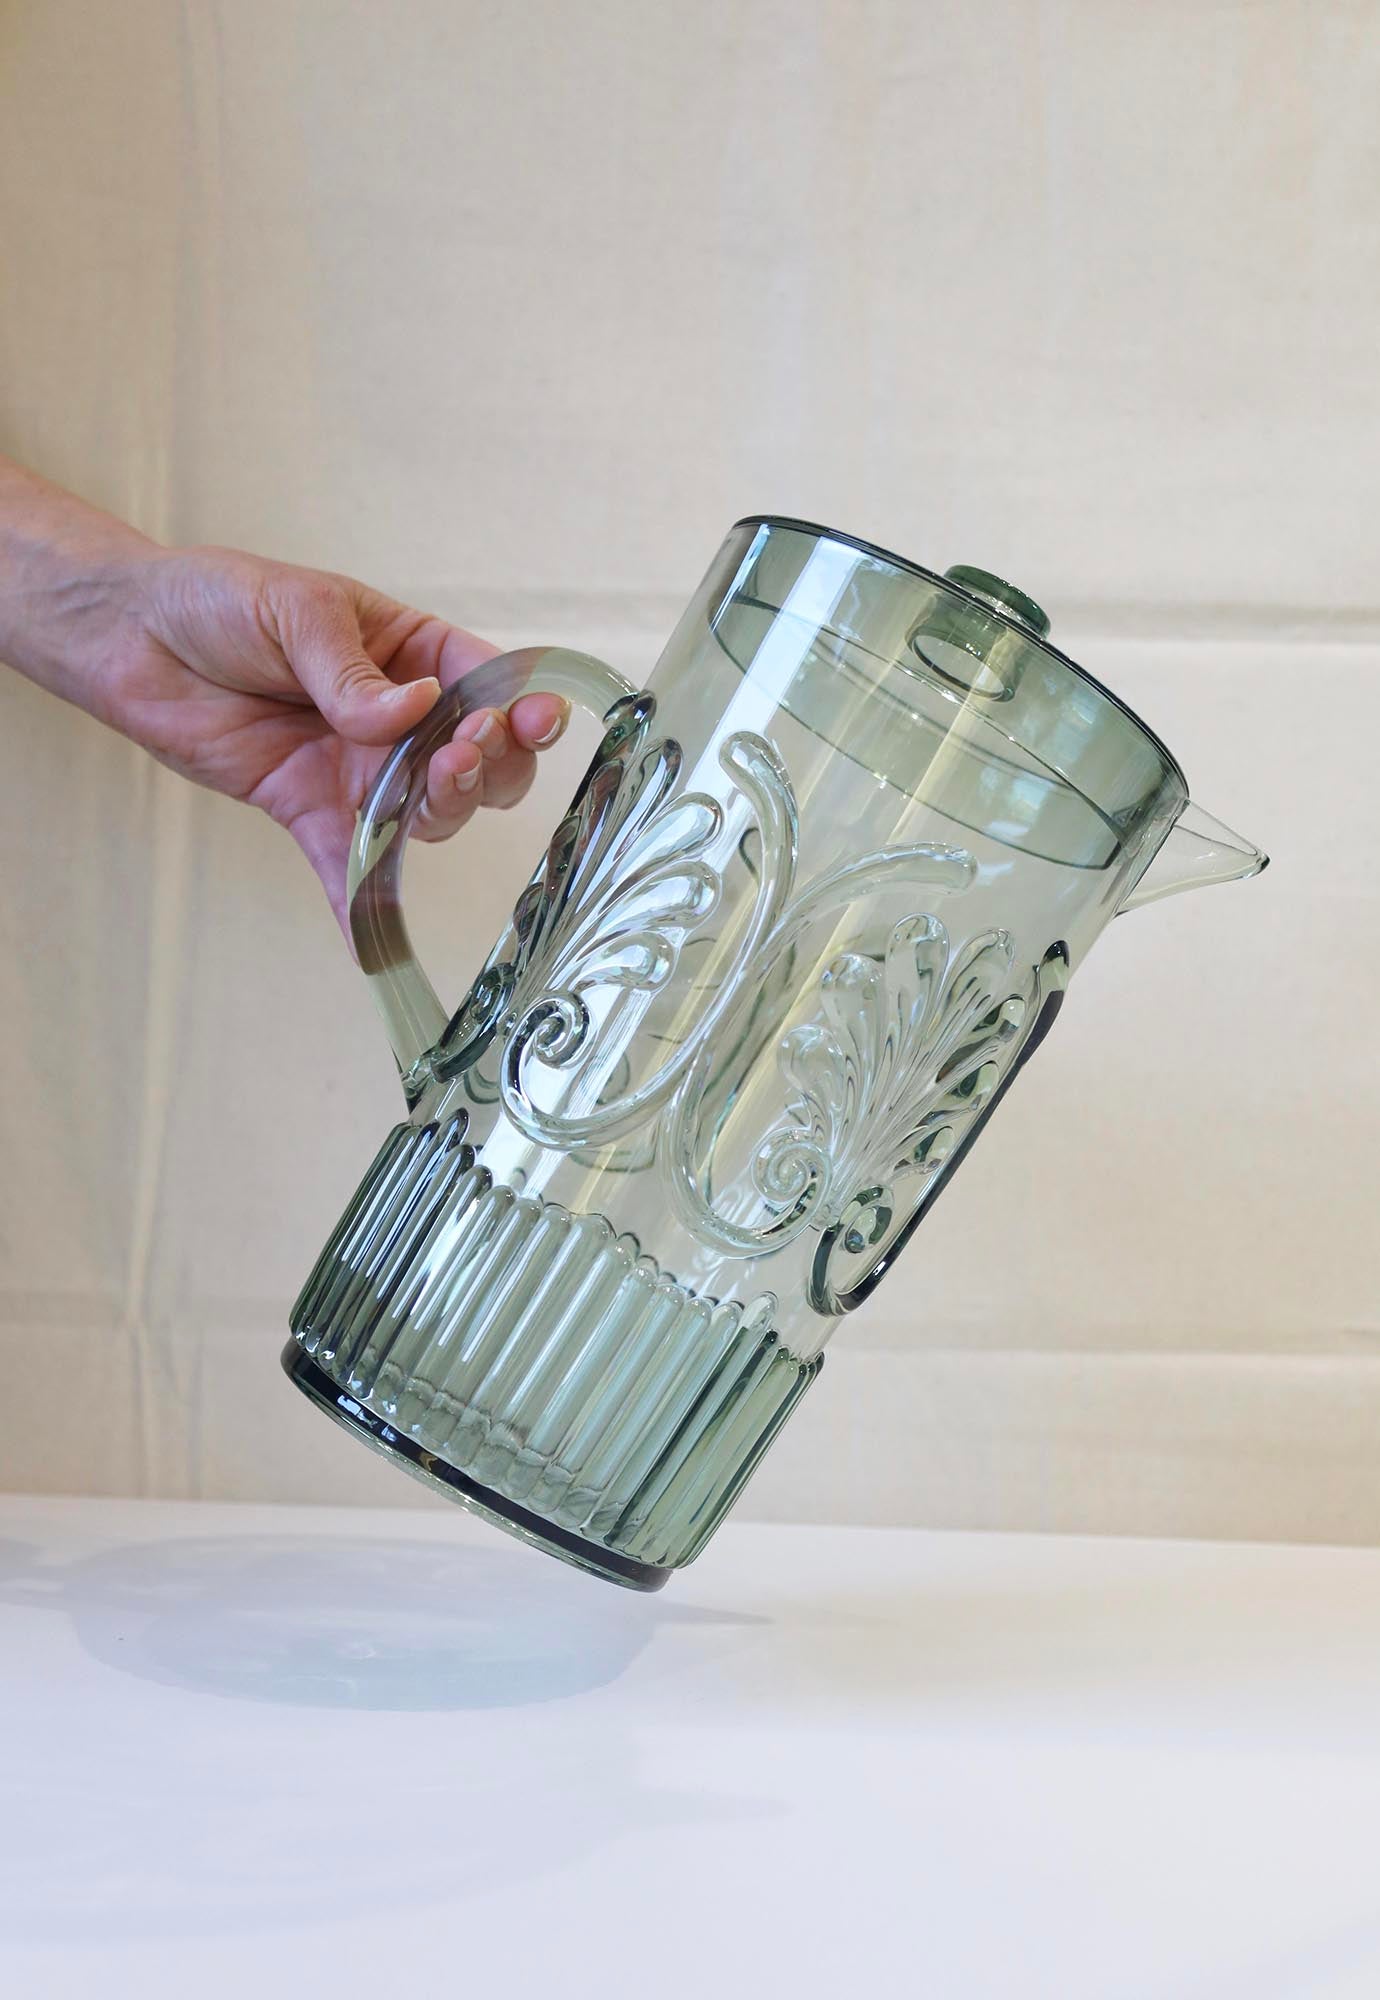 acrylic jug